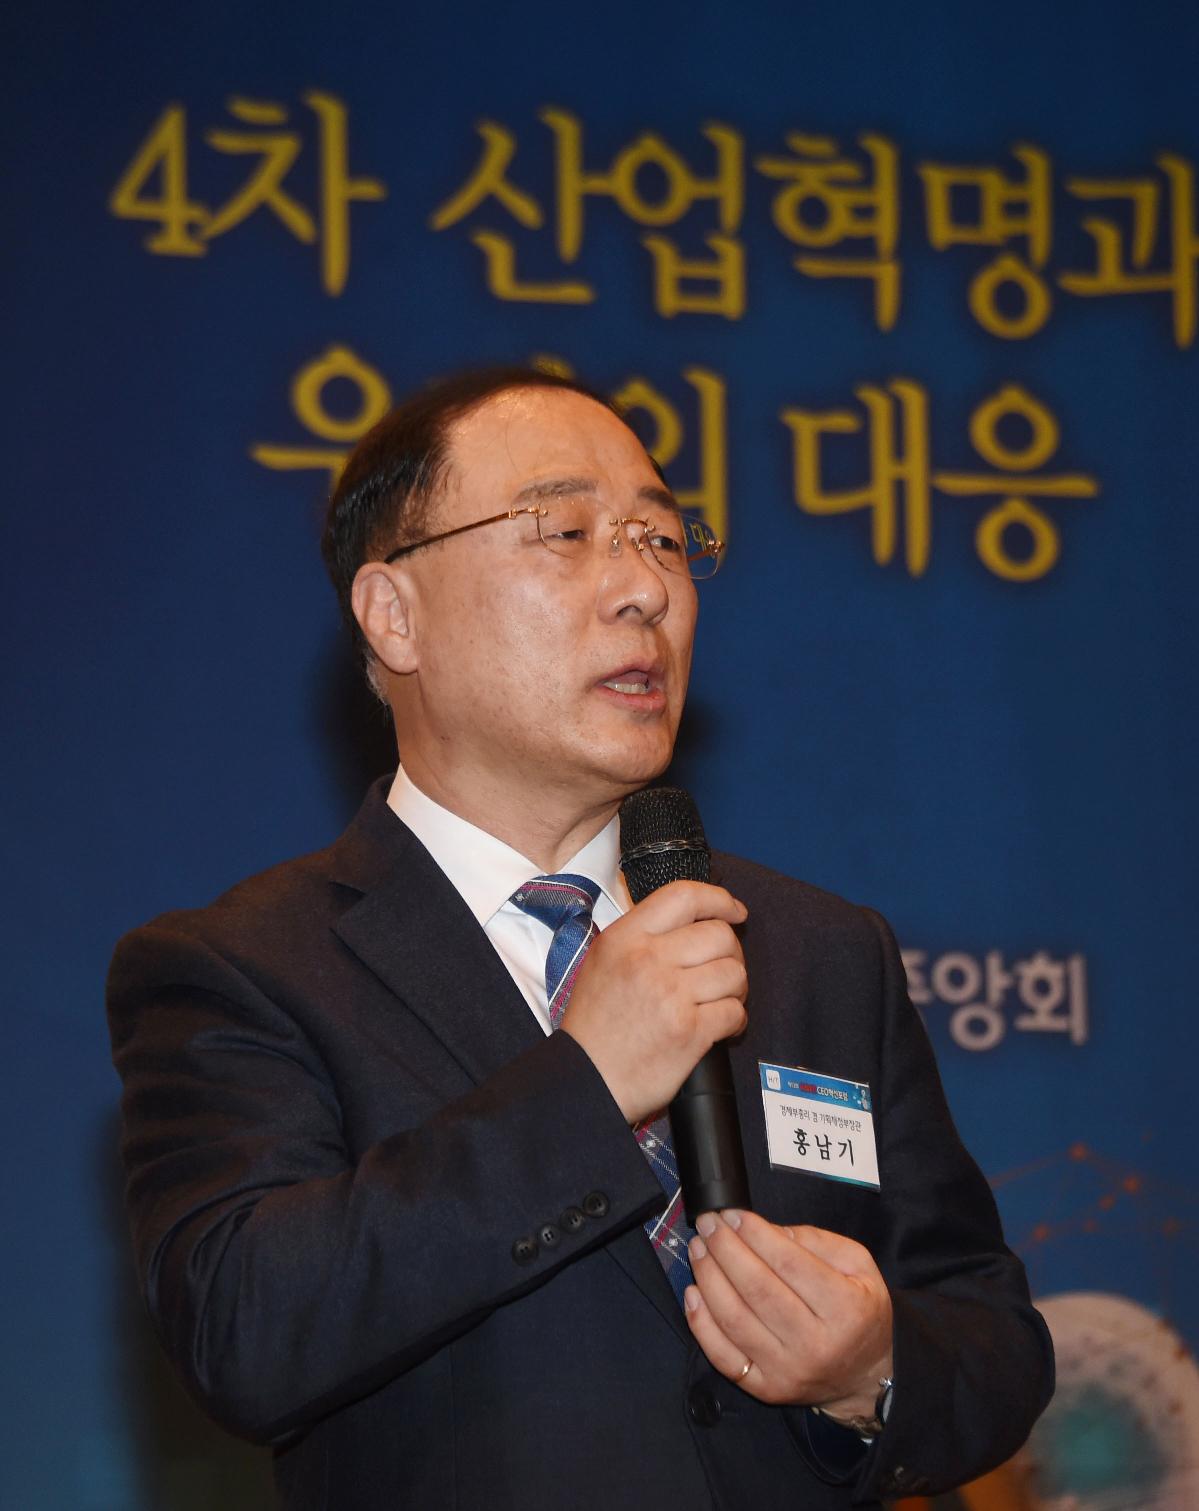 홍남기 부총리, KBIZ CEO혁신포럼 조찬강연